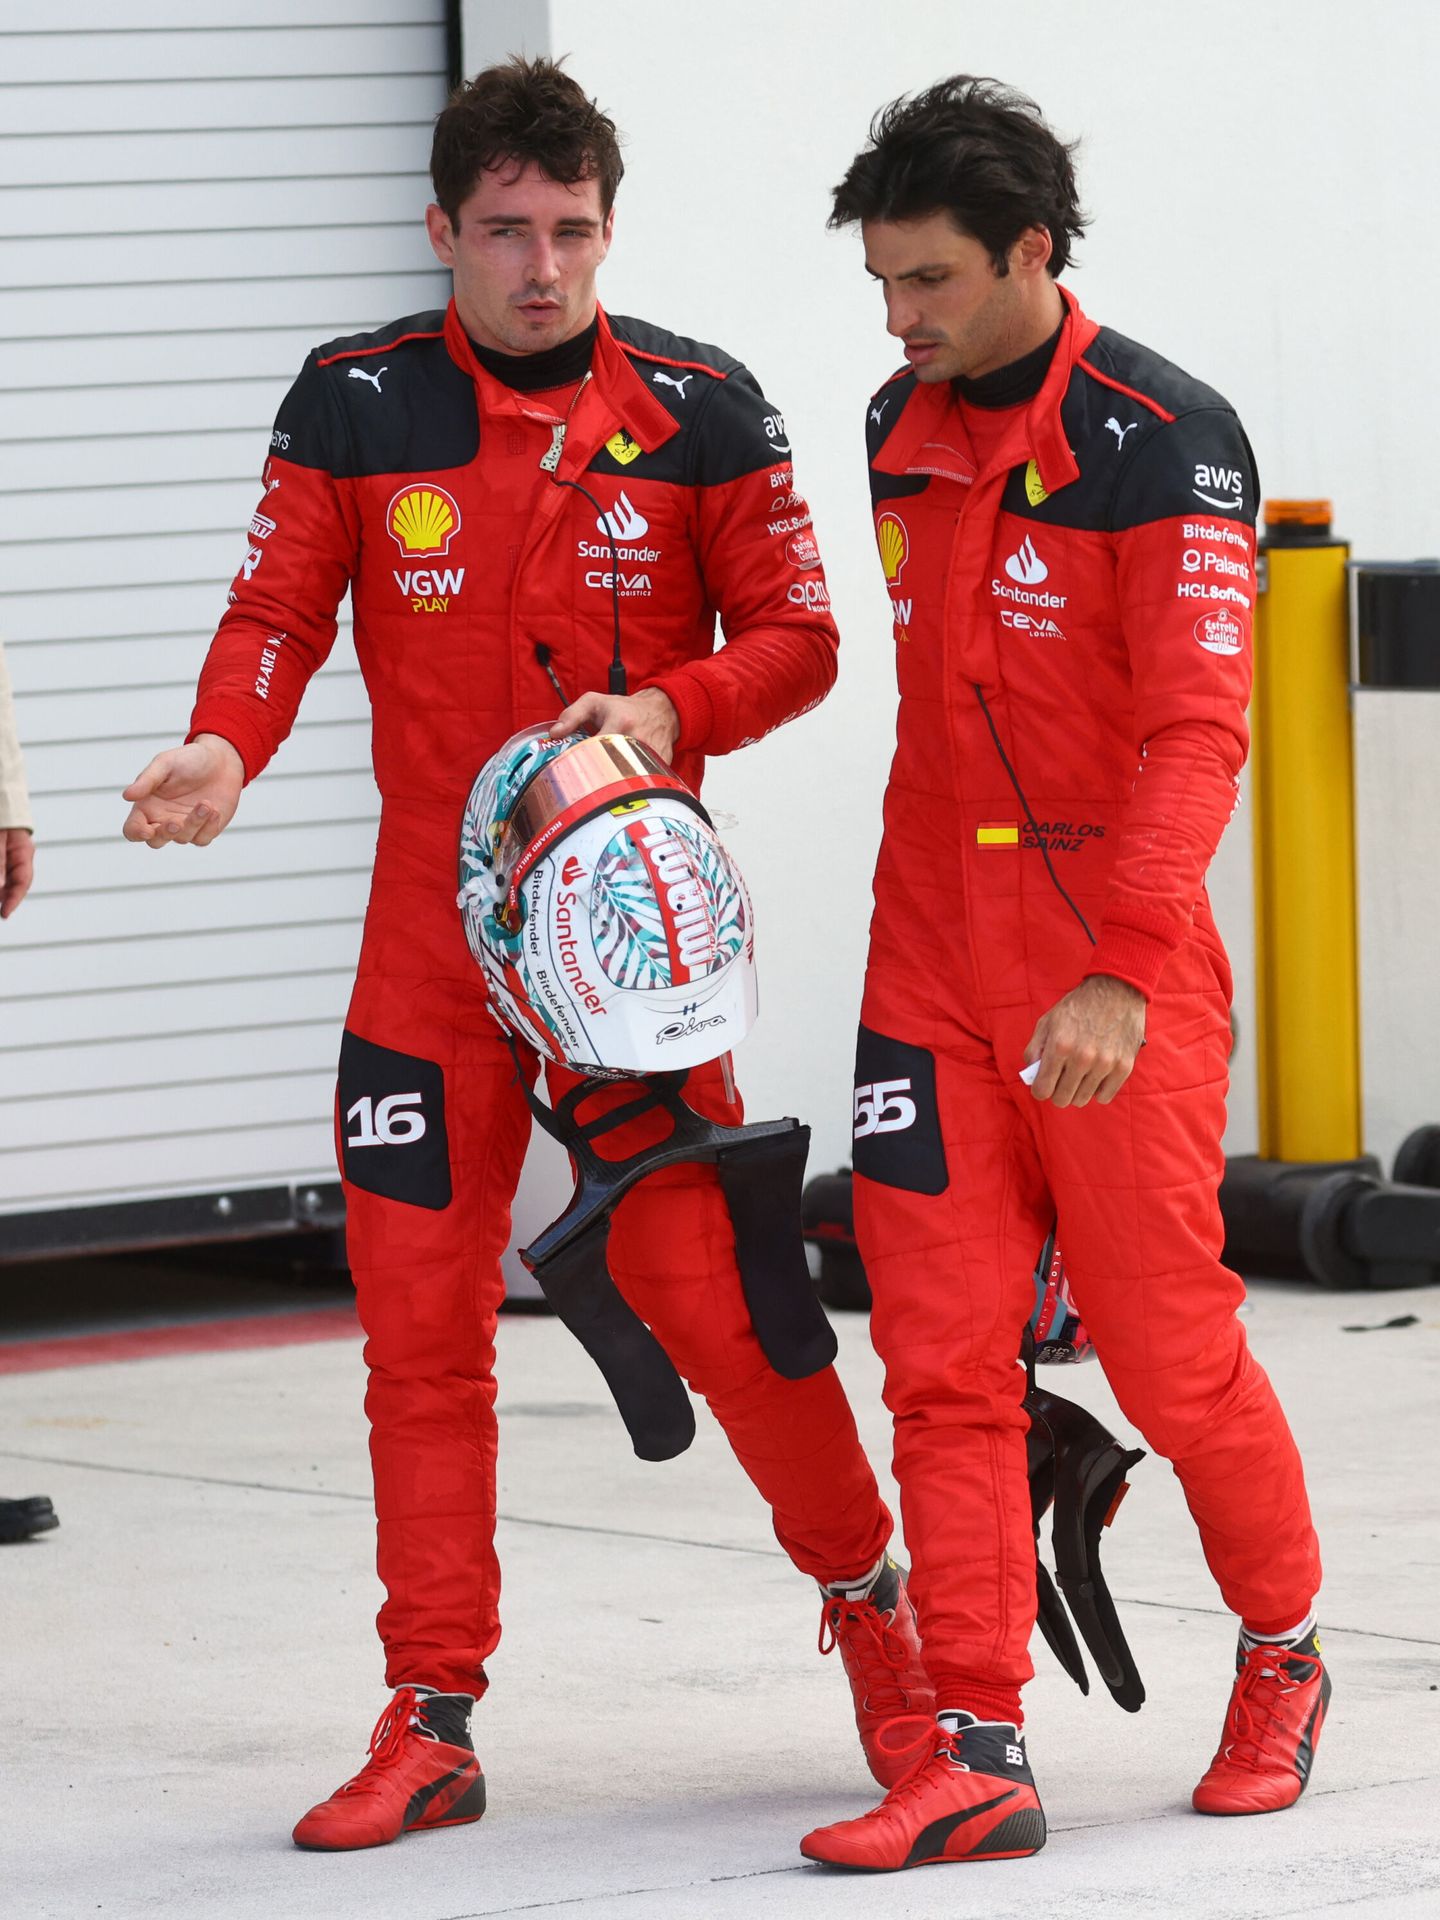 Las diferencias entre Charles leclerc y Carlos Sainz no justifican un estatus superior del monegasco sobre el madrileño en Ferrari (REUTERS/ Mike Segar)